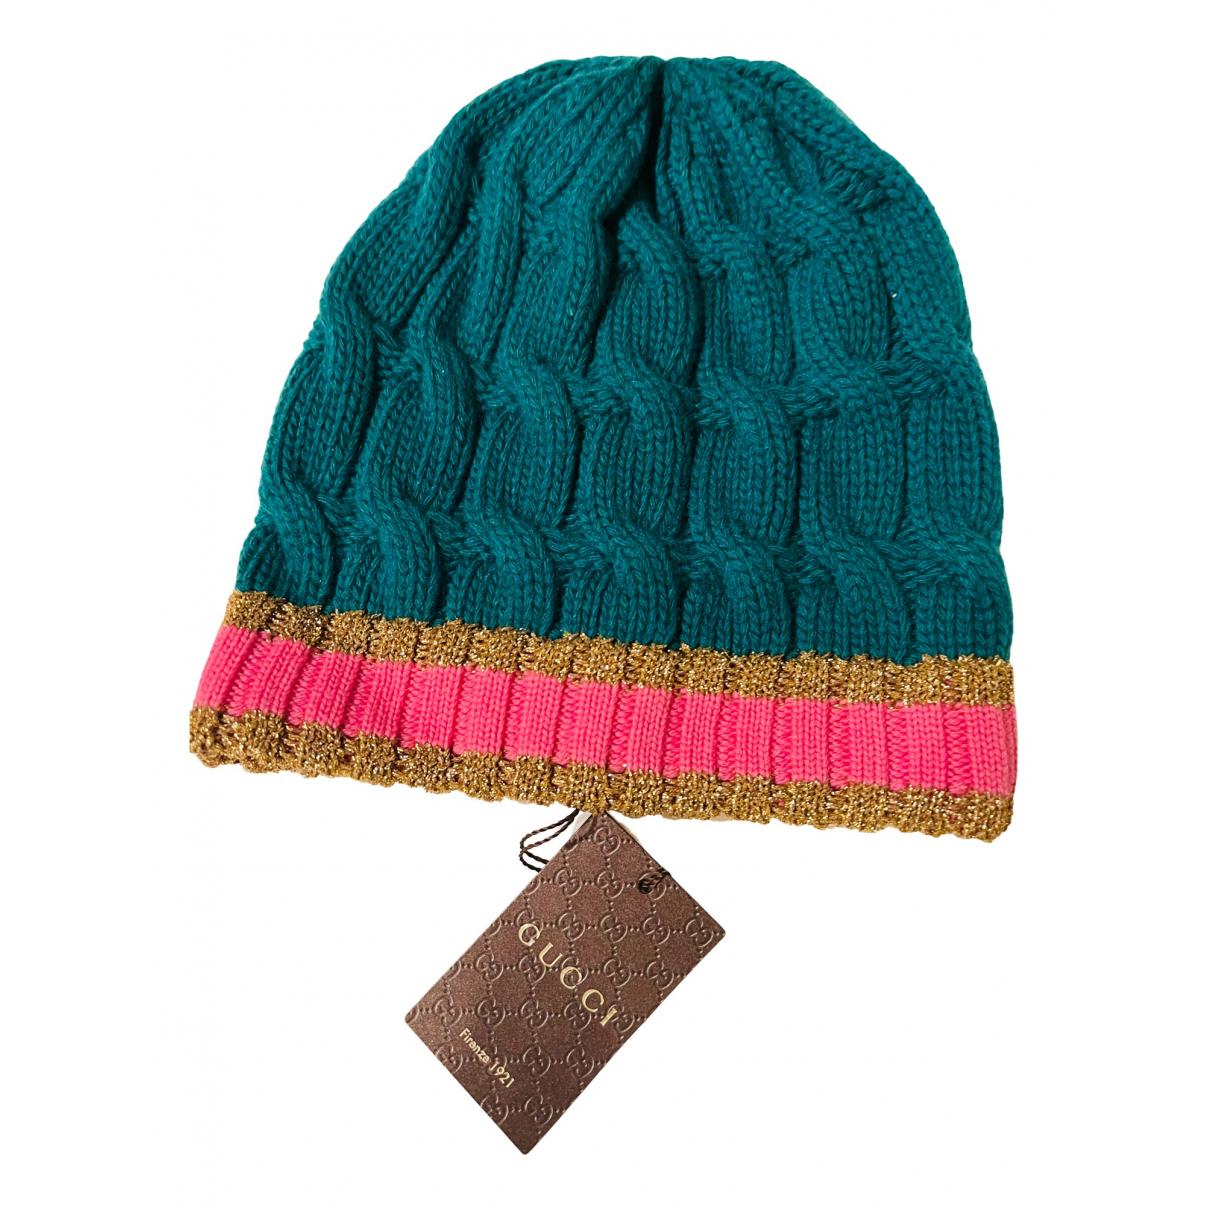 Wool cap